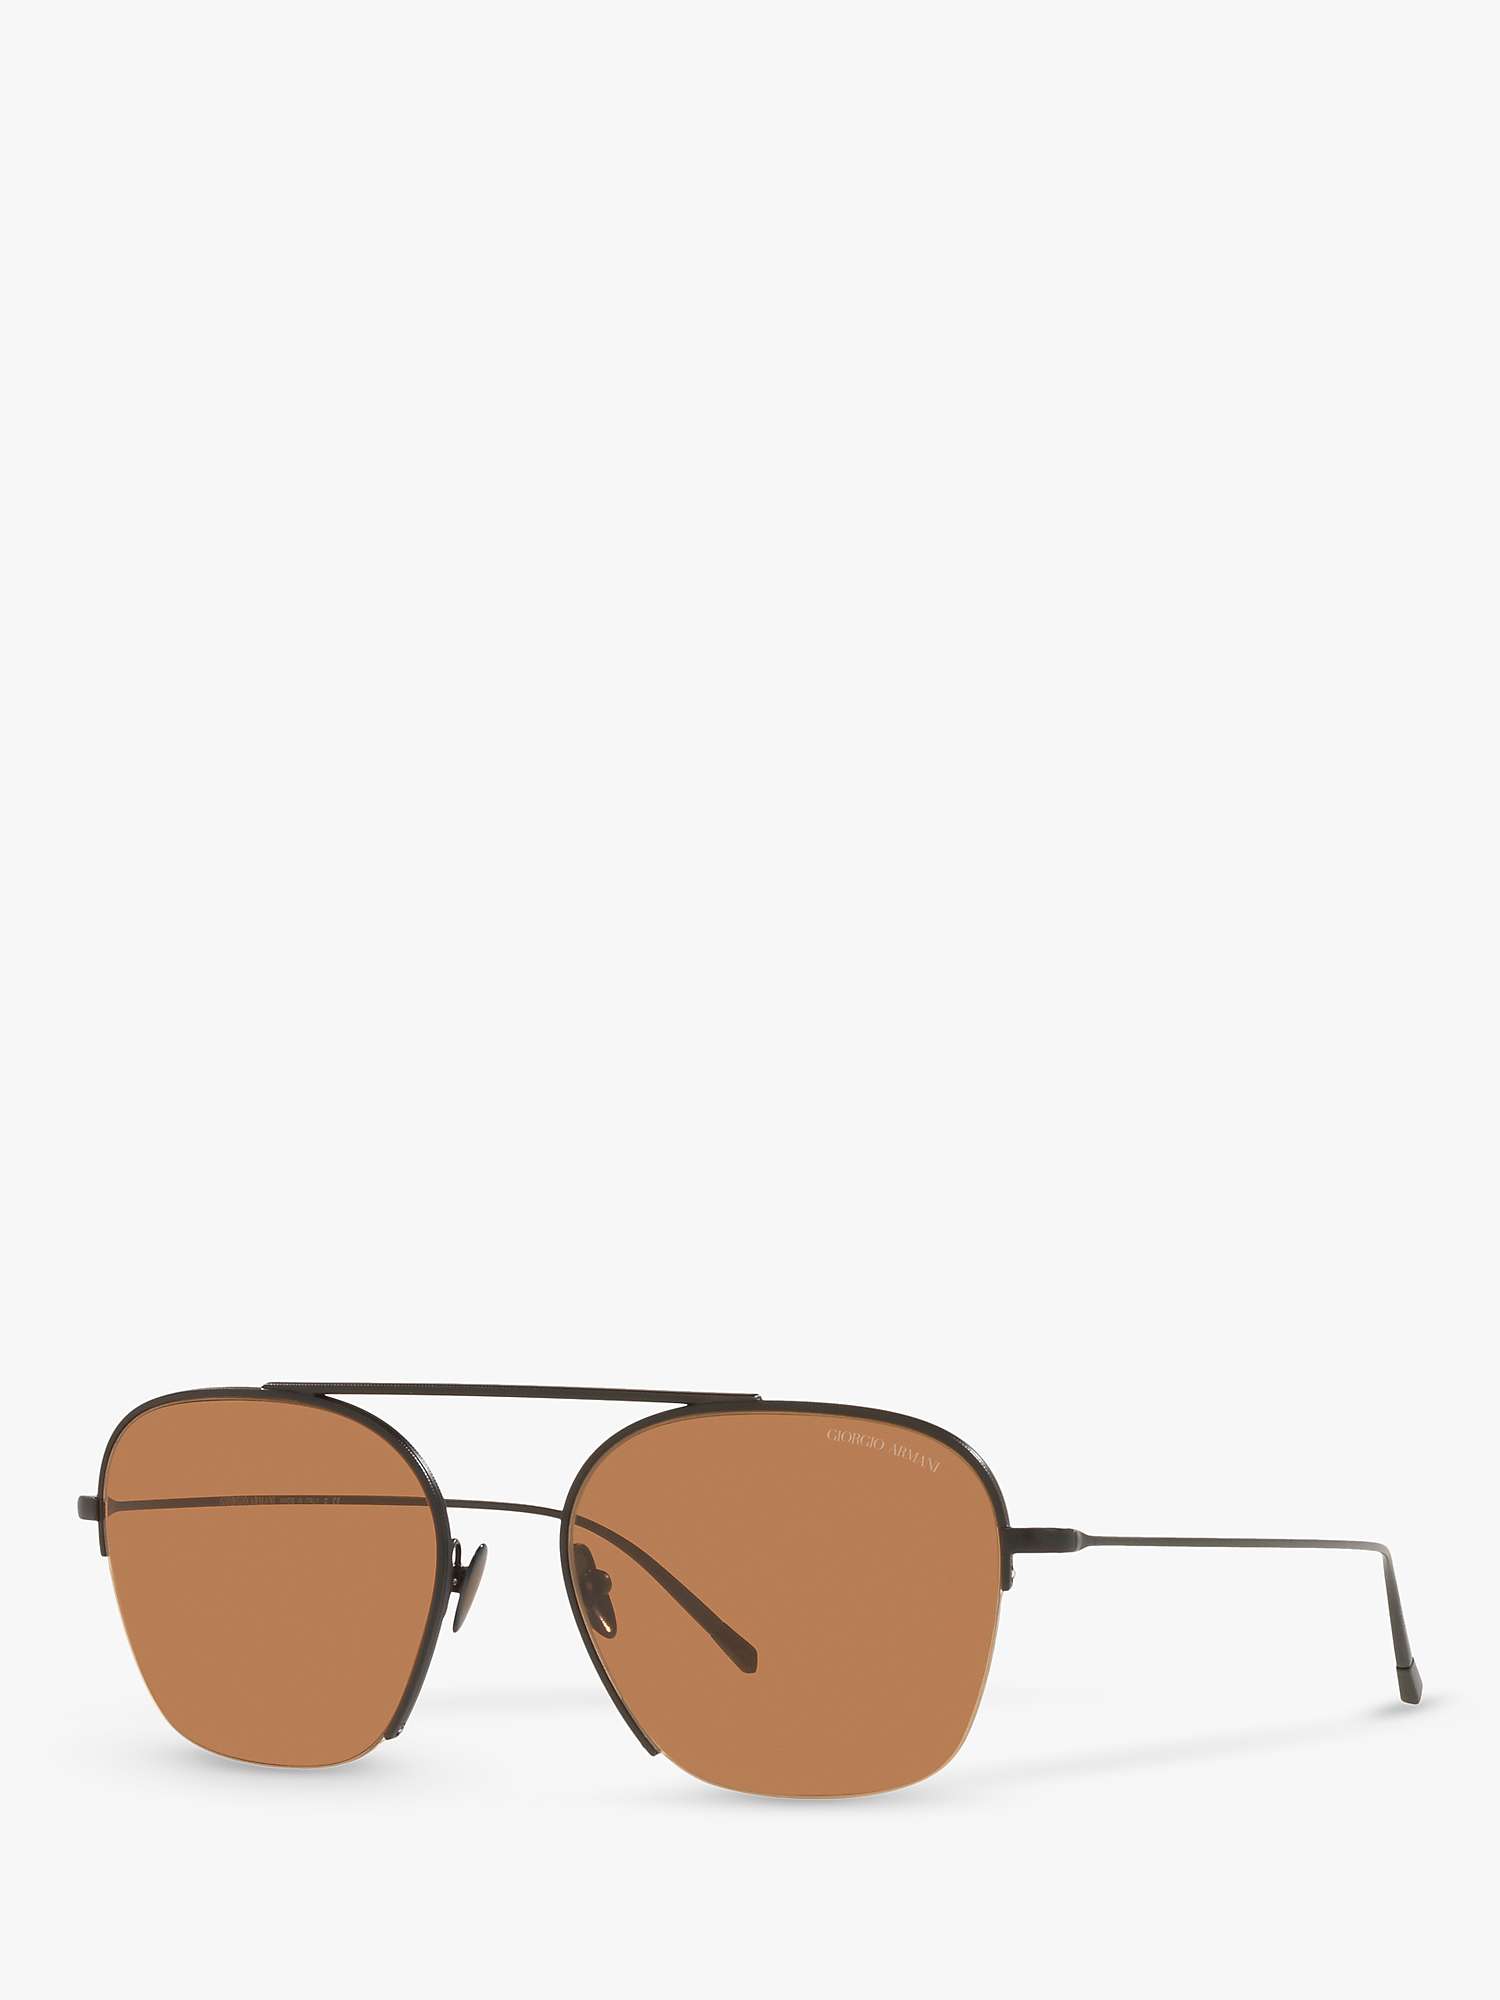 Men’s square sunglasses | GIORGIO ARMANI Man